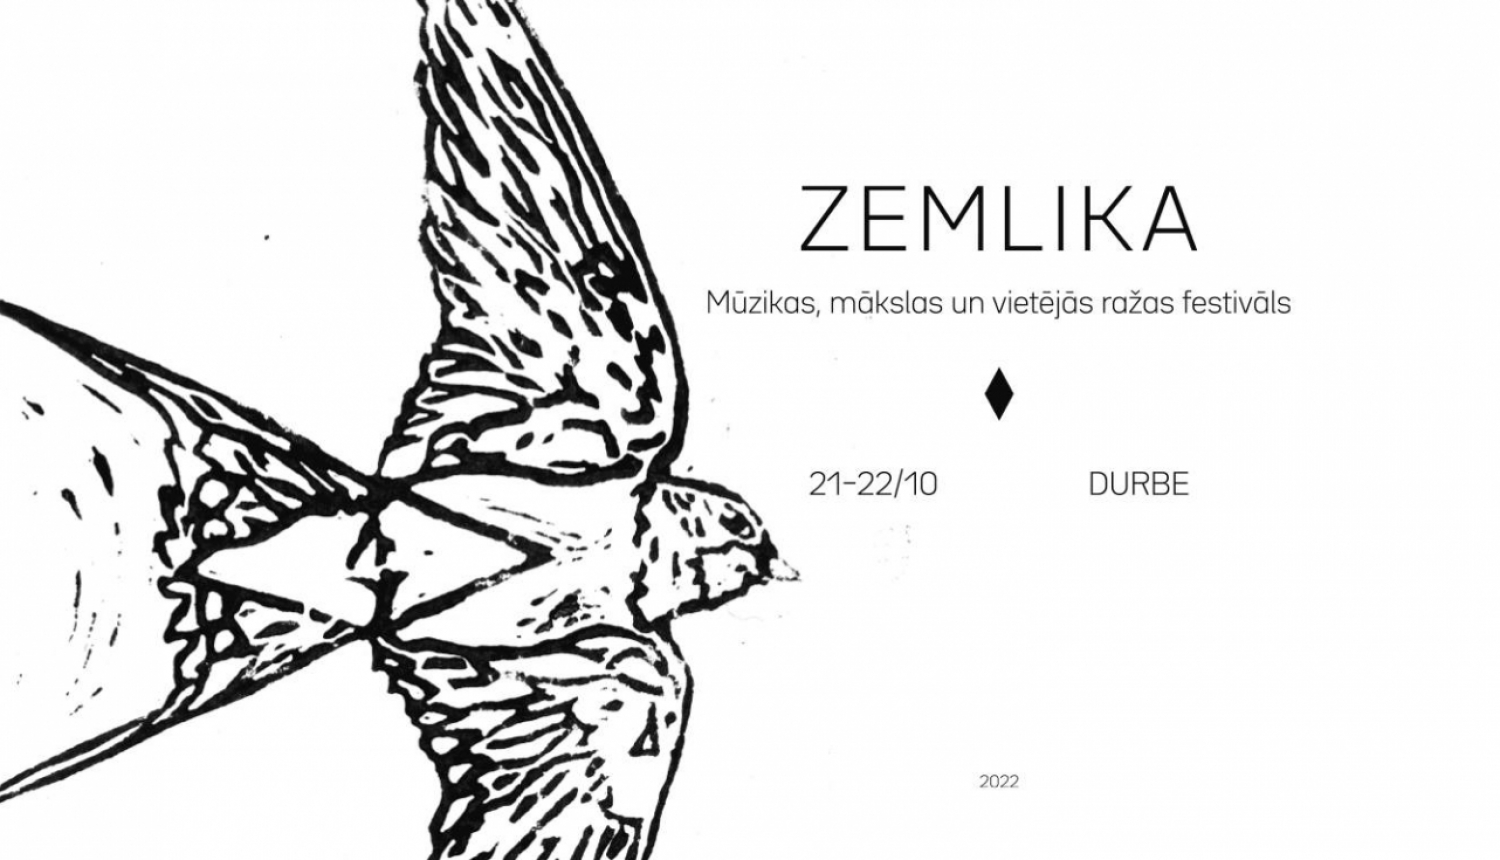 Festivāla “Zemlika” logo